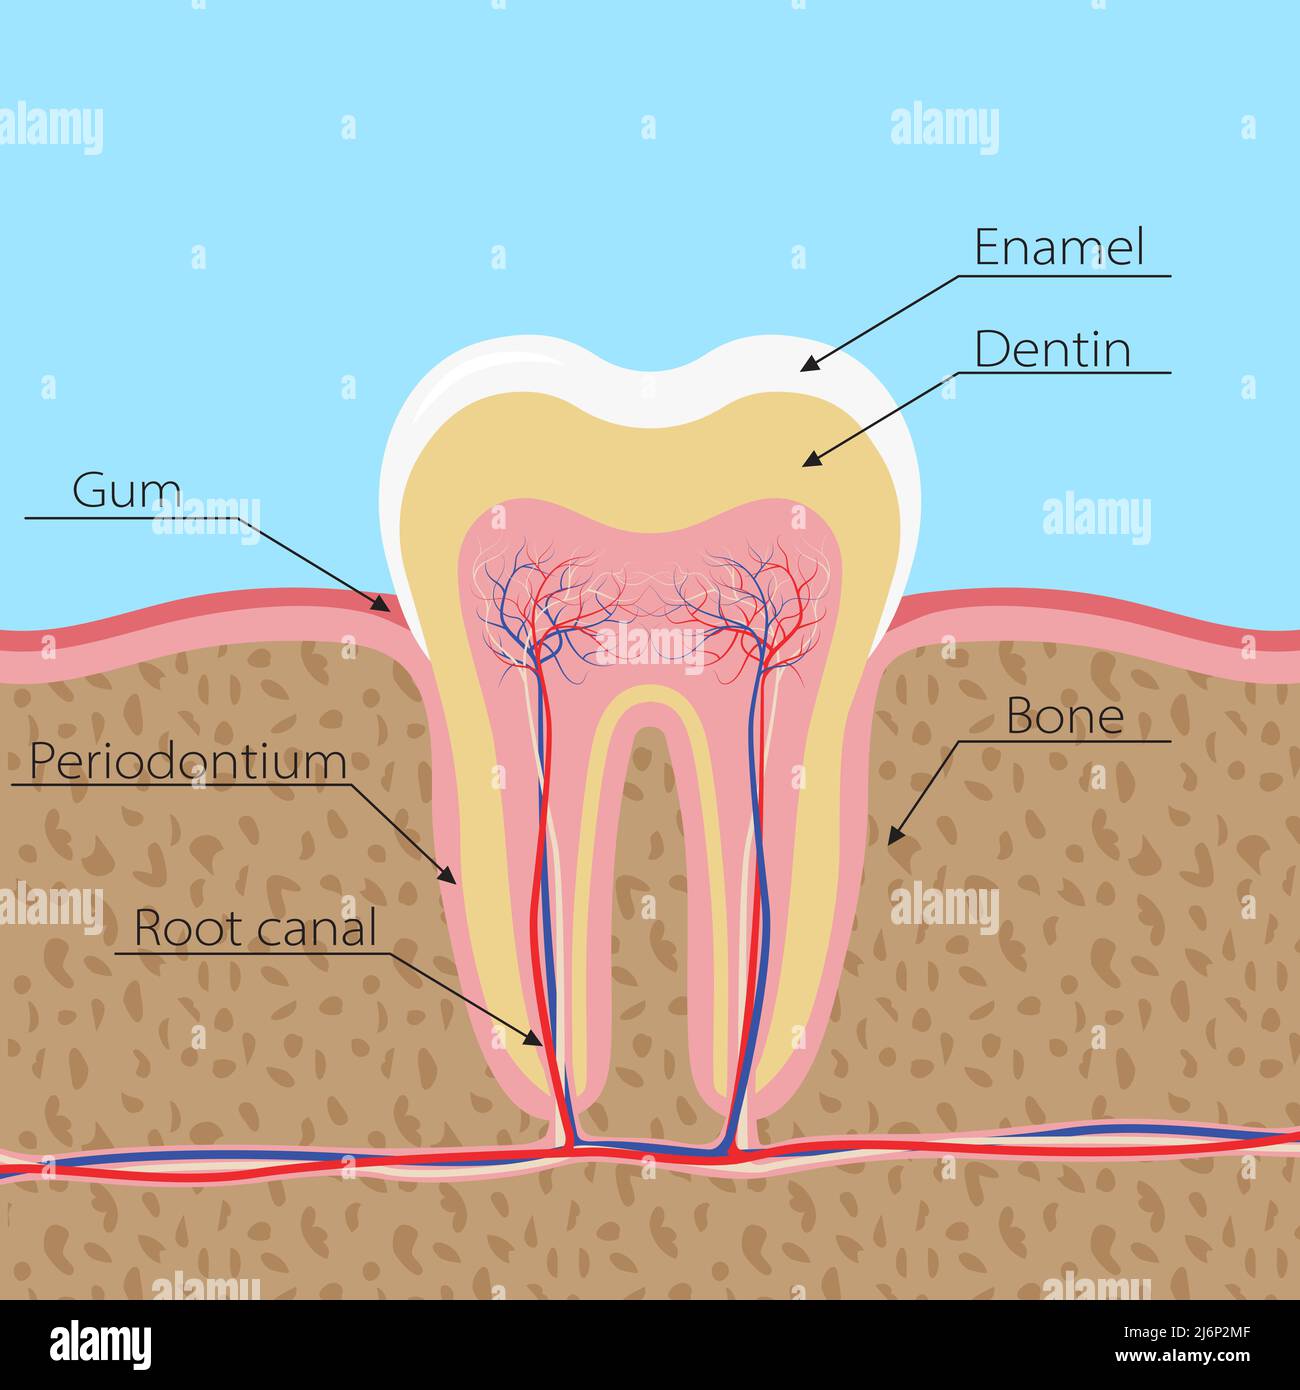 Structure de la dent humaine. La dent est incisée dans la gencive, avec des nerfs et des vaisseaux sanguins. Infographies en dentisterie avec les noms des éléments Illustration de Vecteur